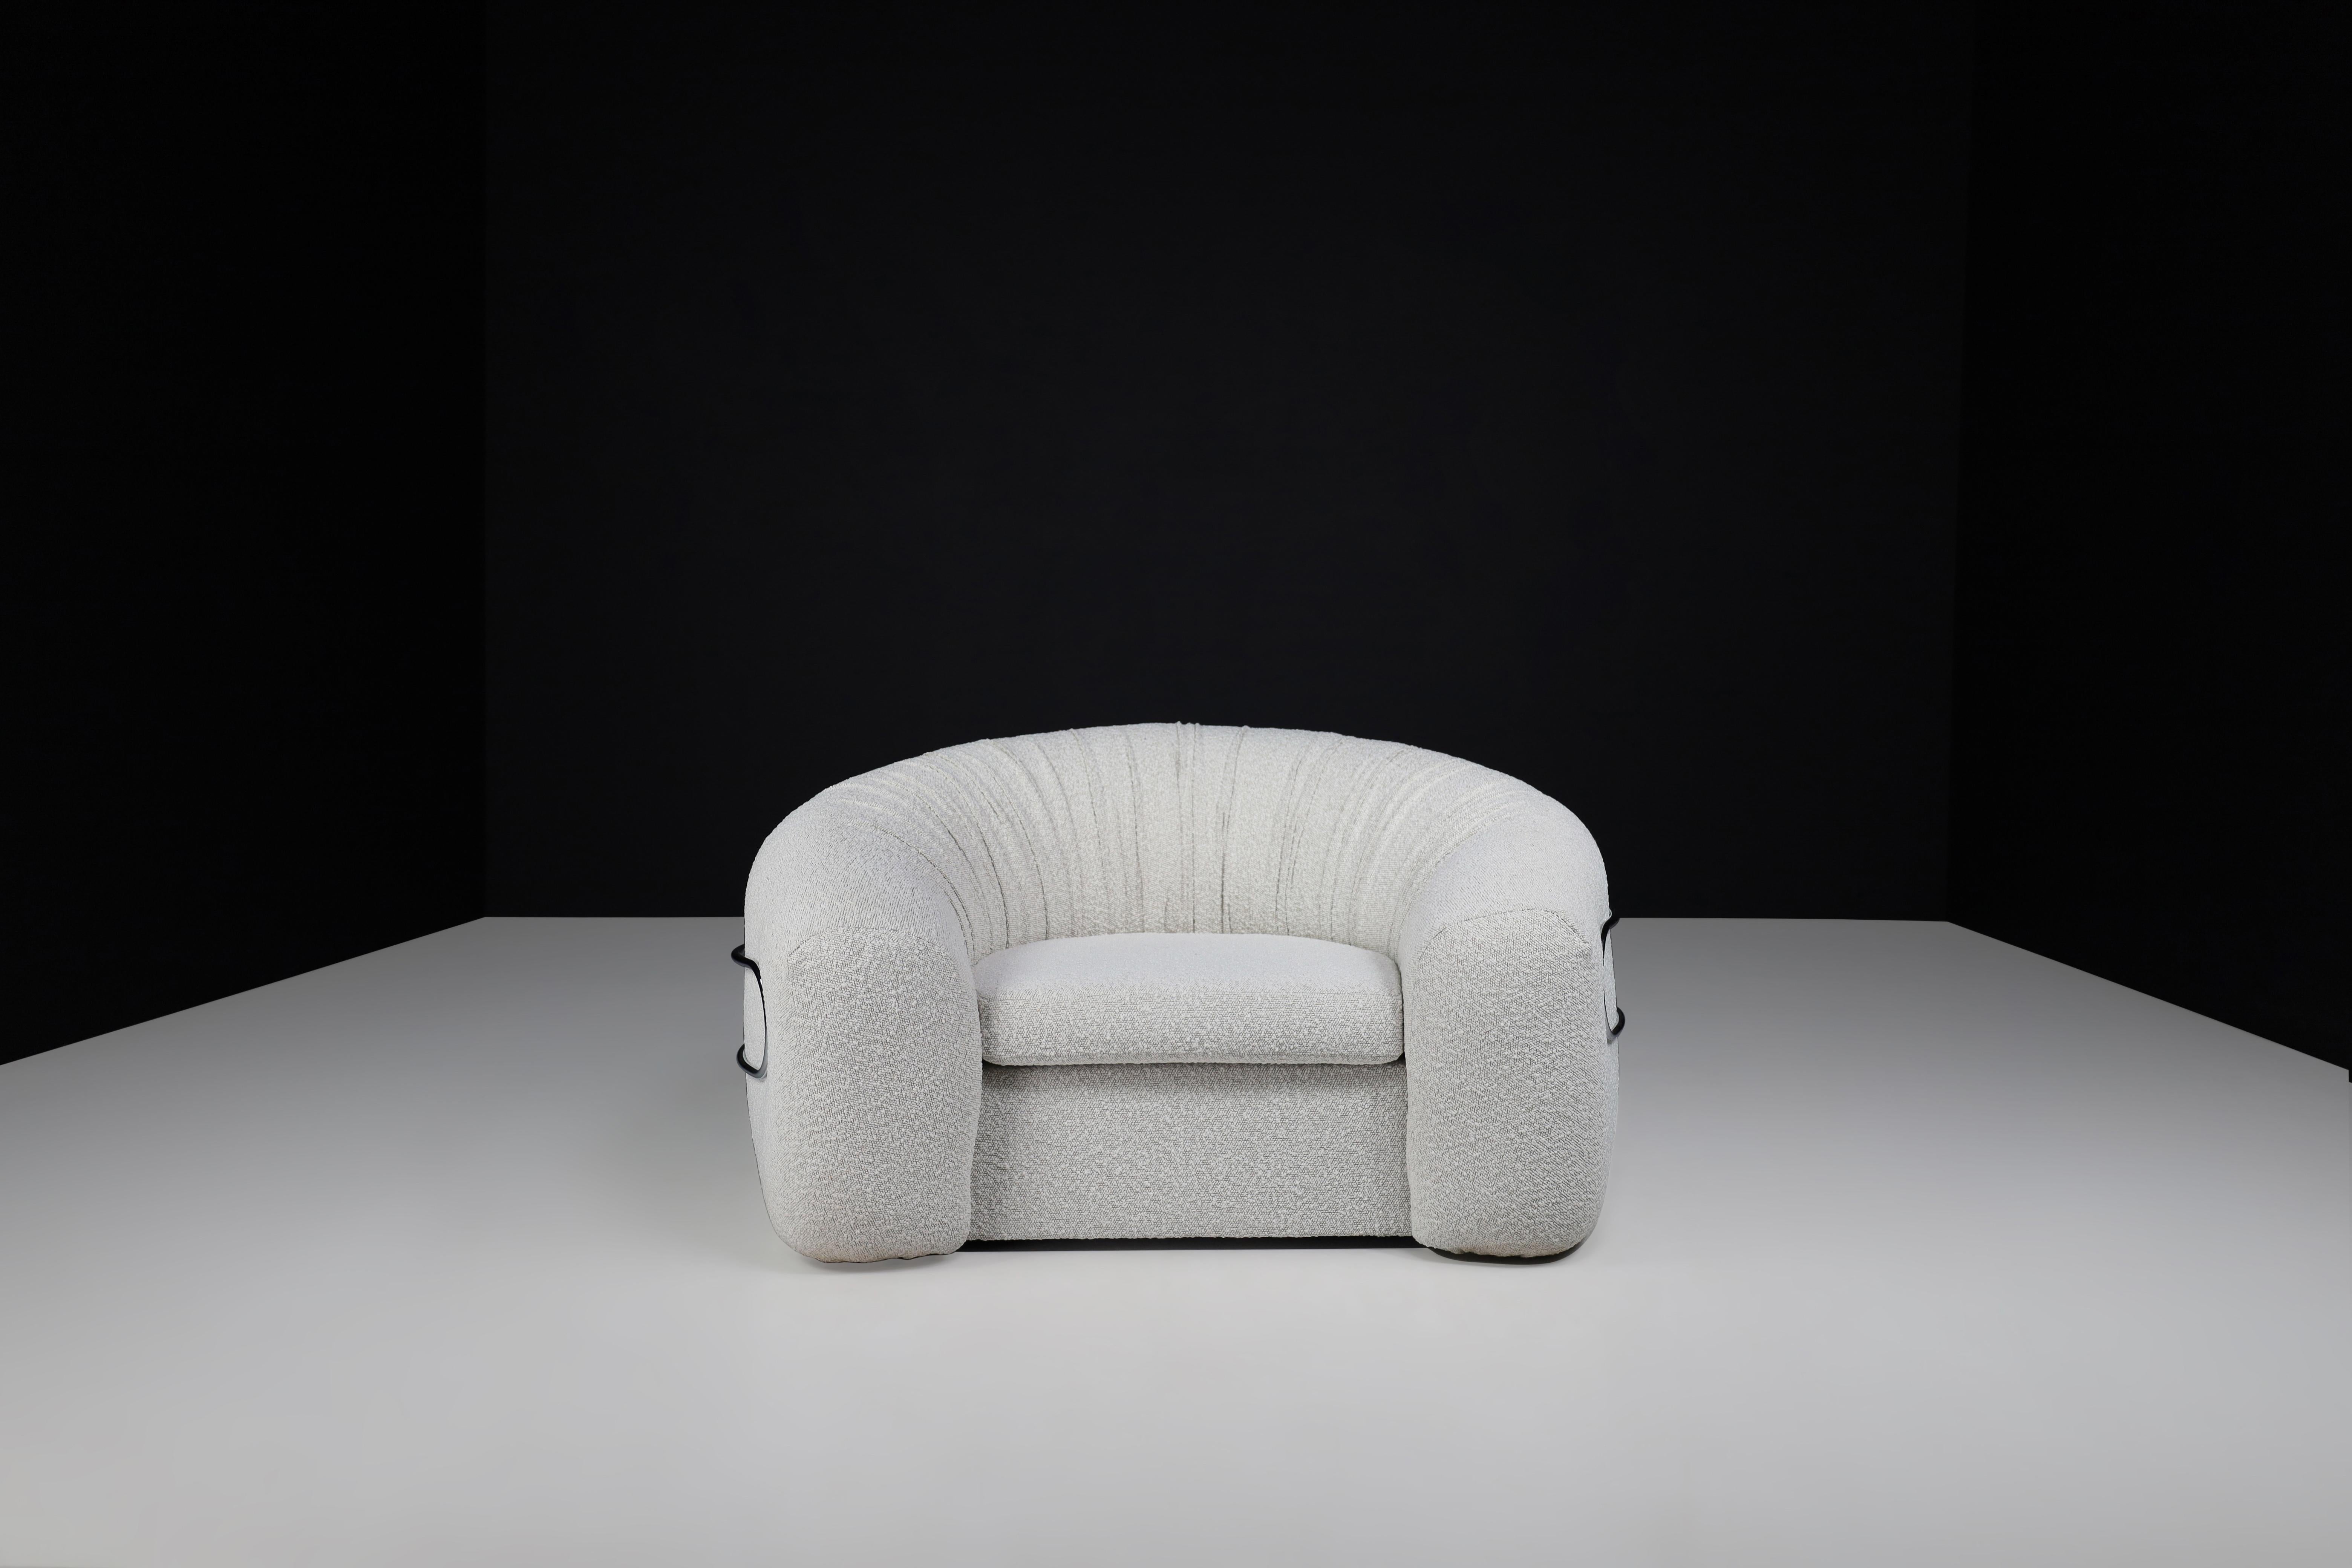 De Pas, D'Urbino und Lomazzi Sessel  Italien 1970. 

Dieser sehr cool geformte Lounge-Sessel wurde von Jonathan de Pas, Donato D'urbino und Paolo Lomazzo entworfen und in  Italien im Jahr 1970. Dieser Sessel ist mit einem neuen, cremefarbenen